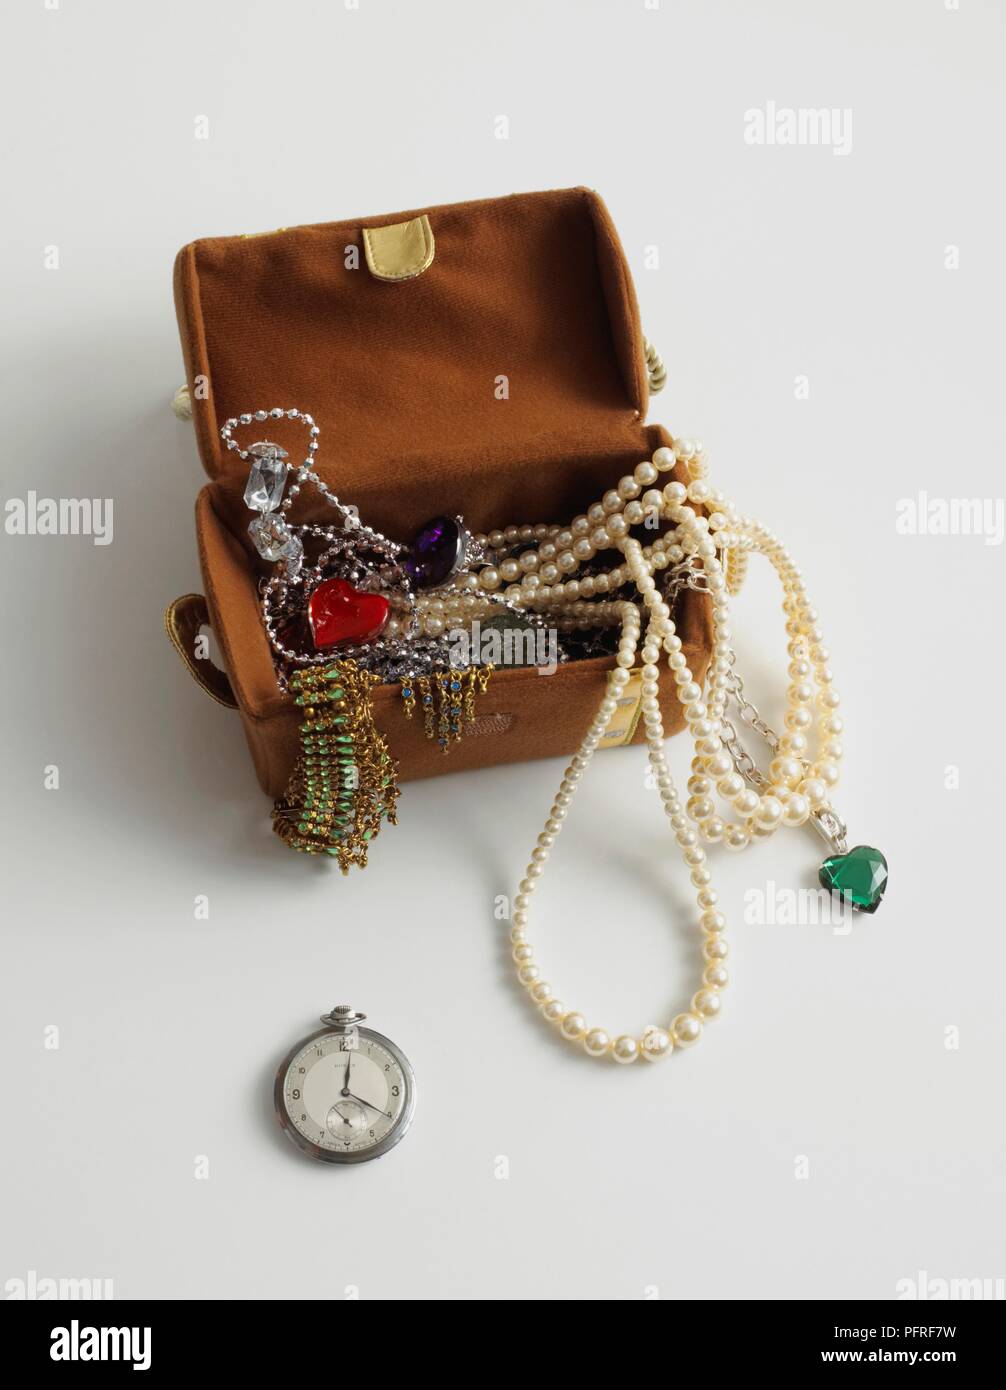 In vecchio stile di gioielleria in confezione aperta e orologio da tasca Foto Stock